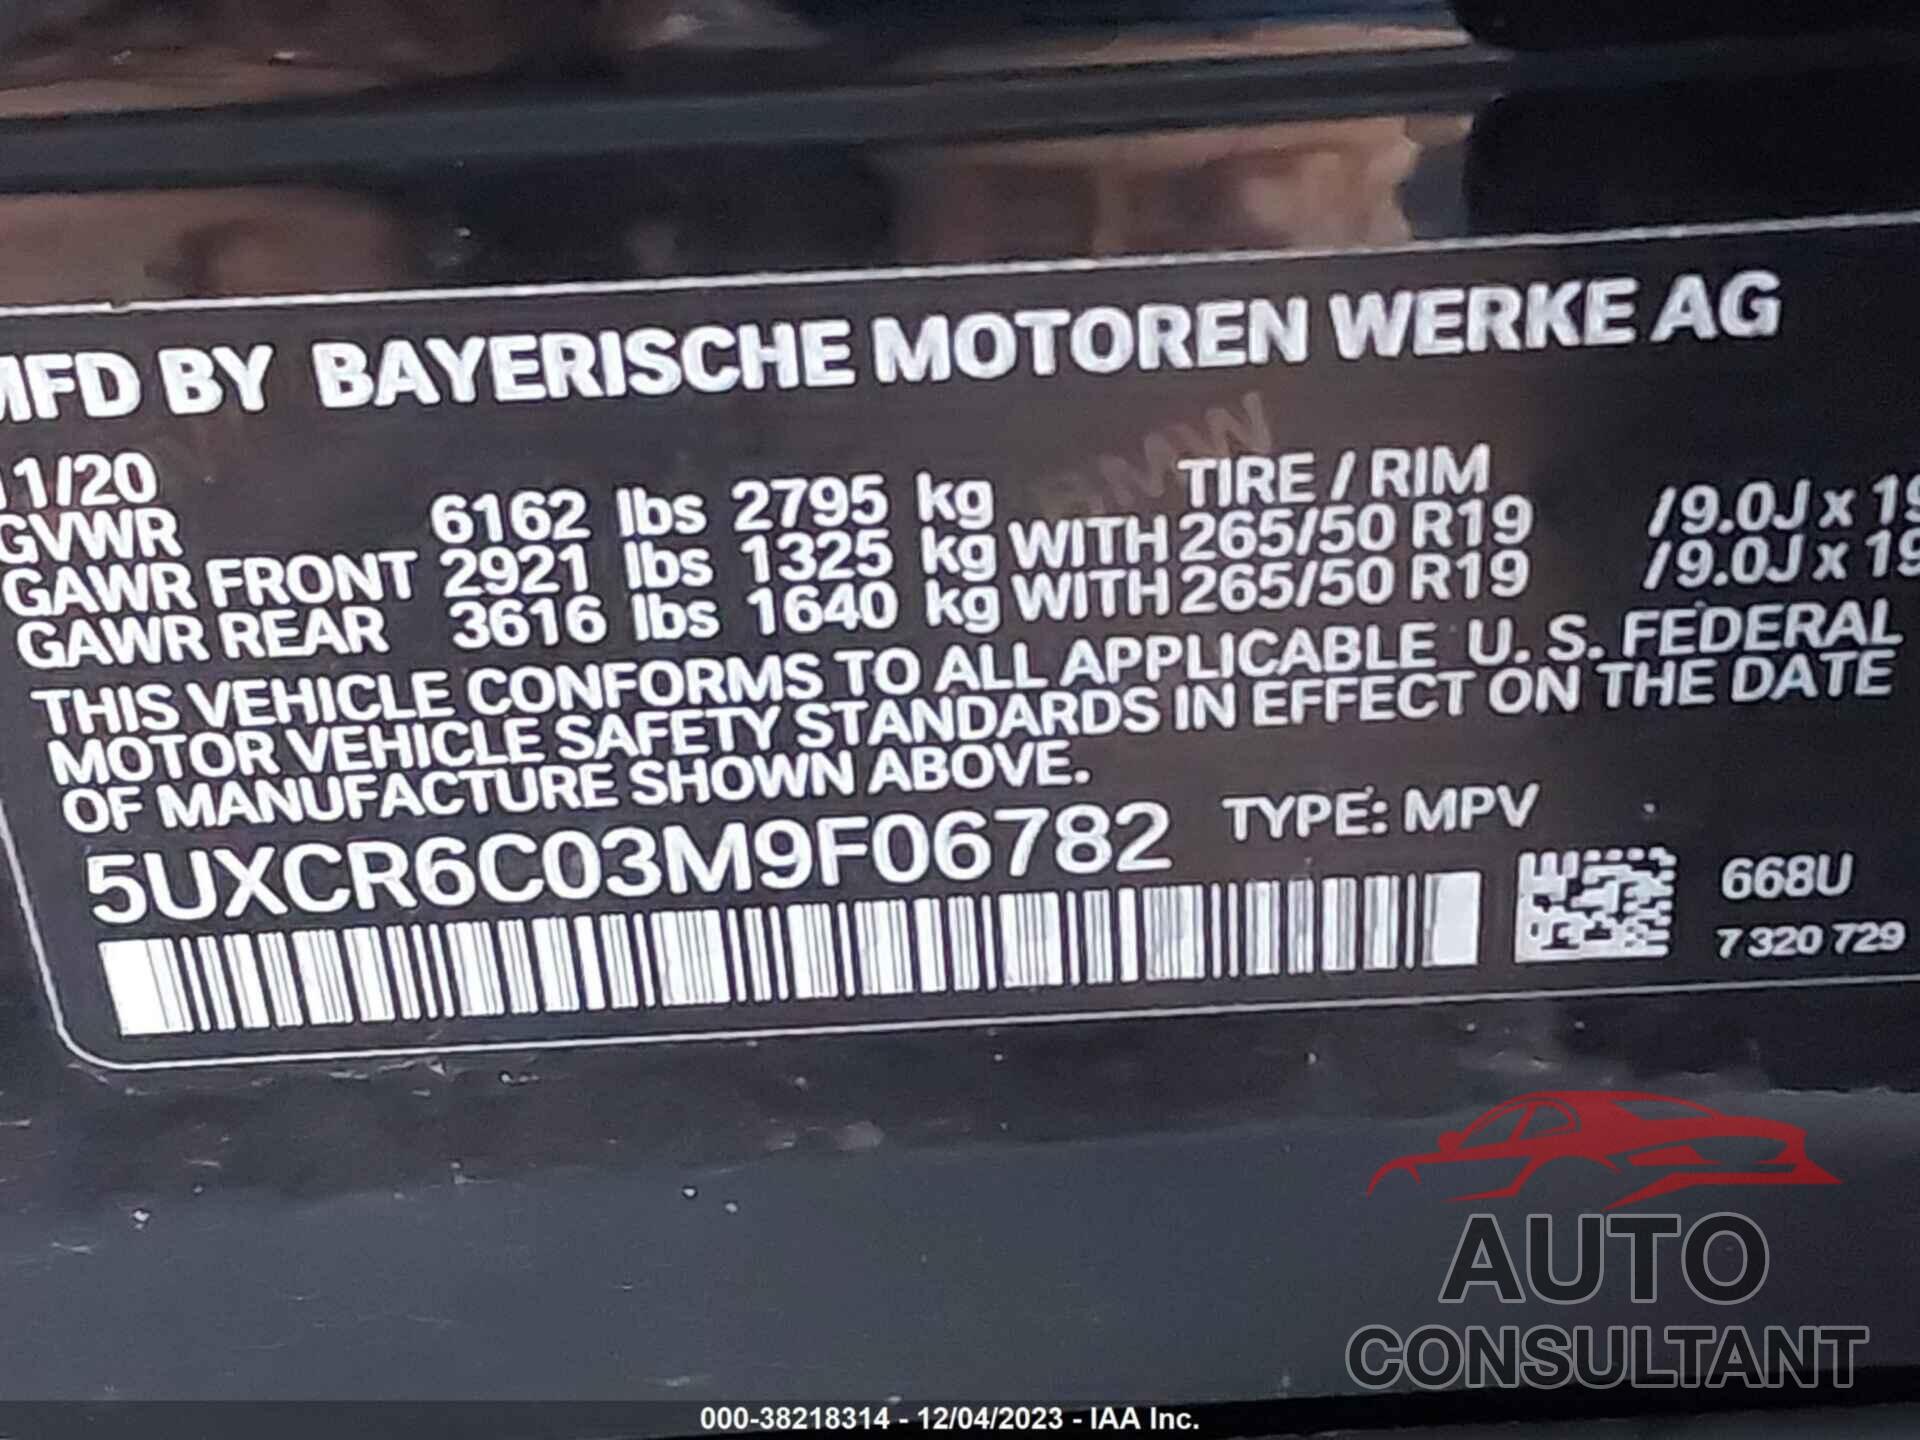 BMW X5 2021 - 5UXCR6C03M9F06782